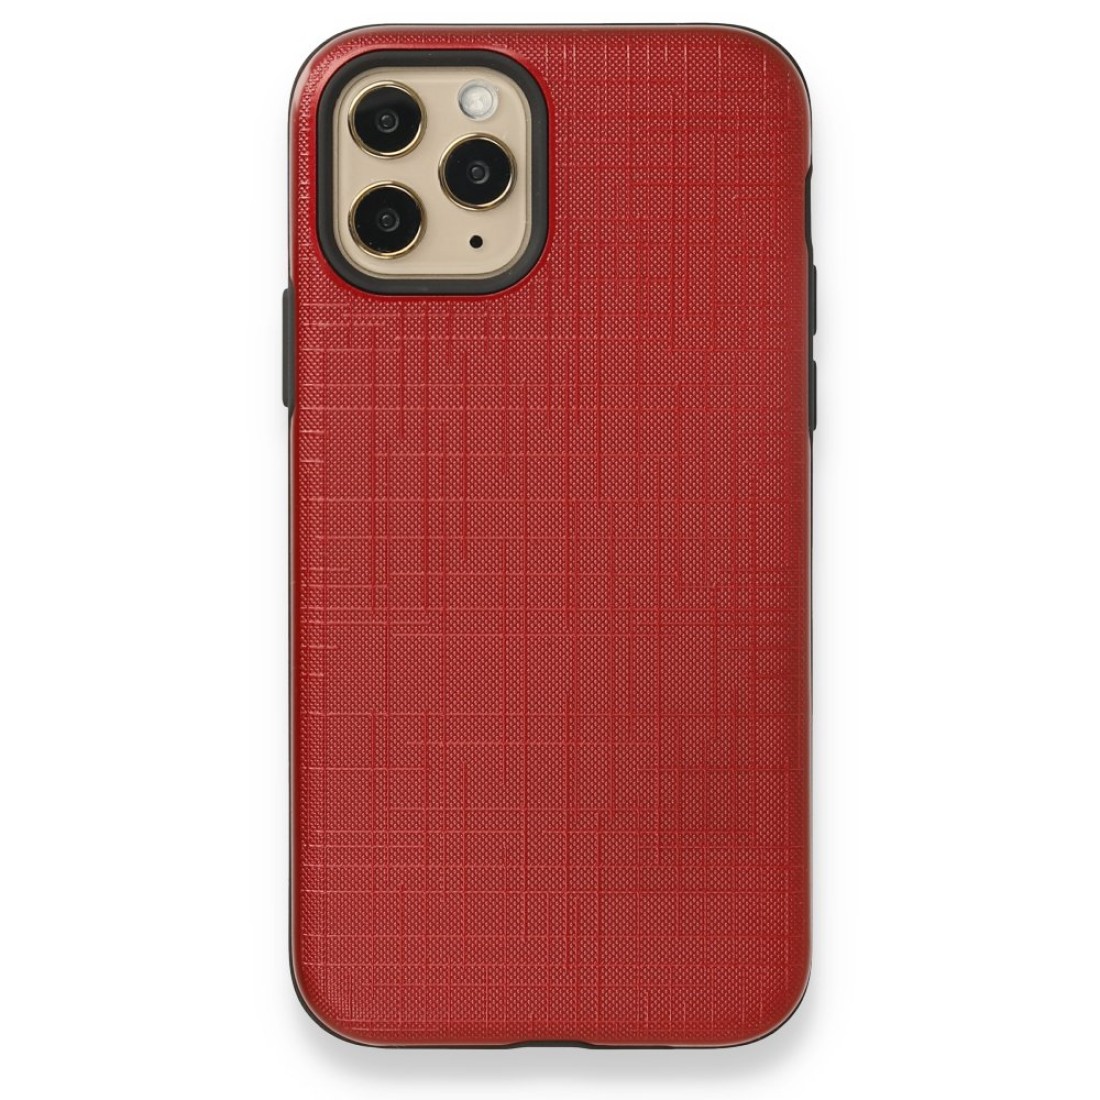 Apple iPhone 11 Pro Max Kılıf YouYou Silikon Kapak - Kırmızı